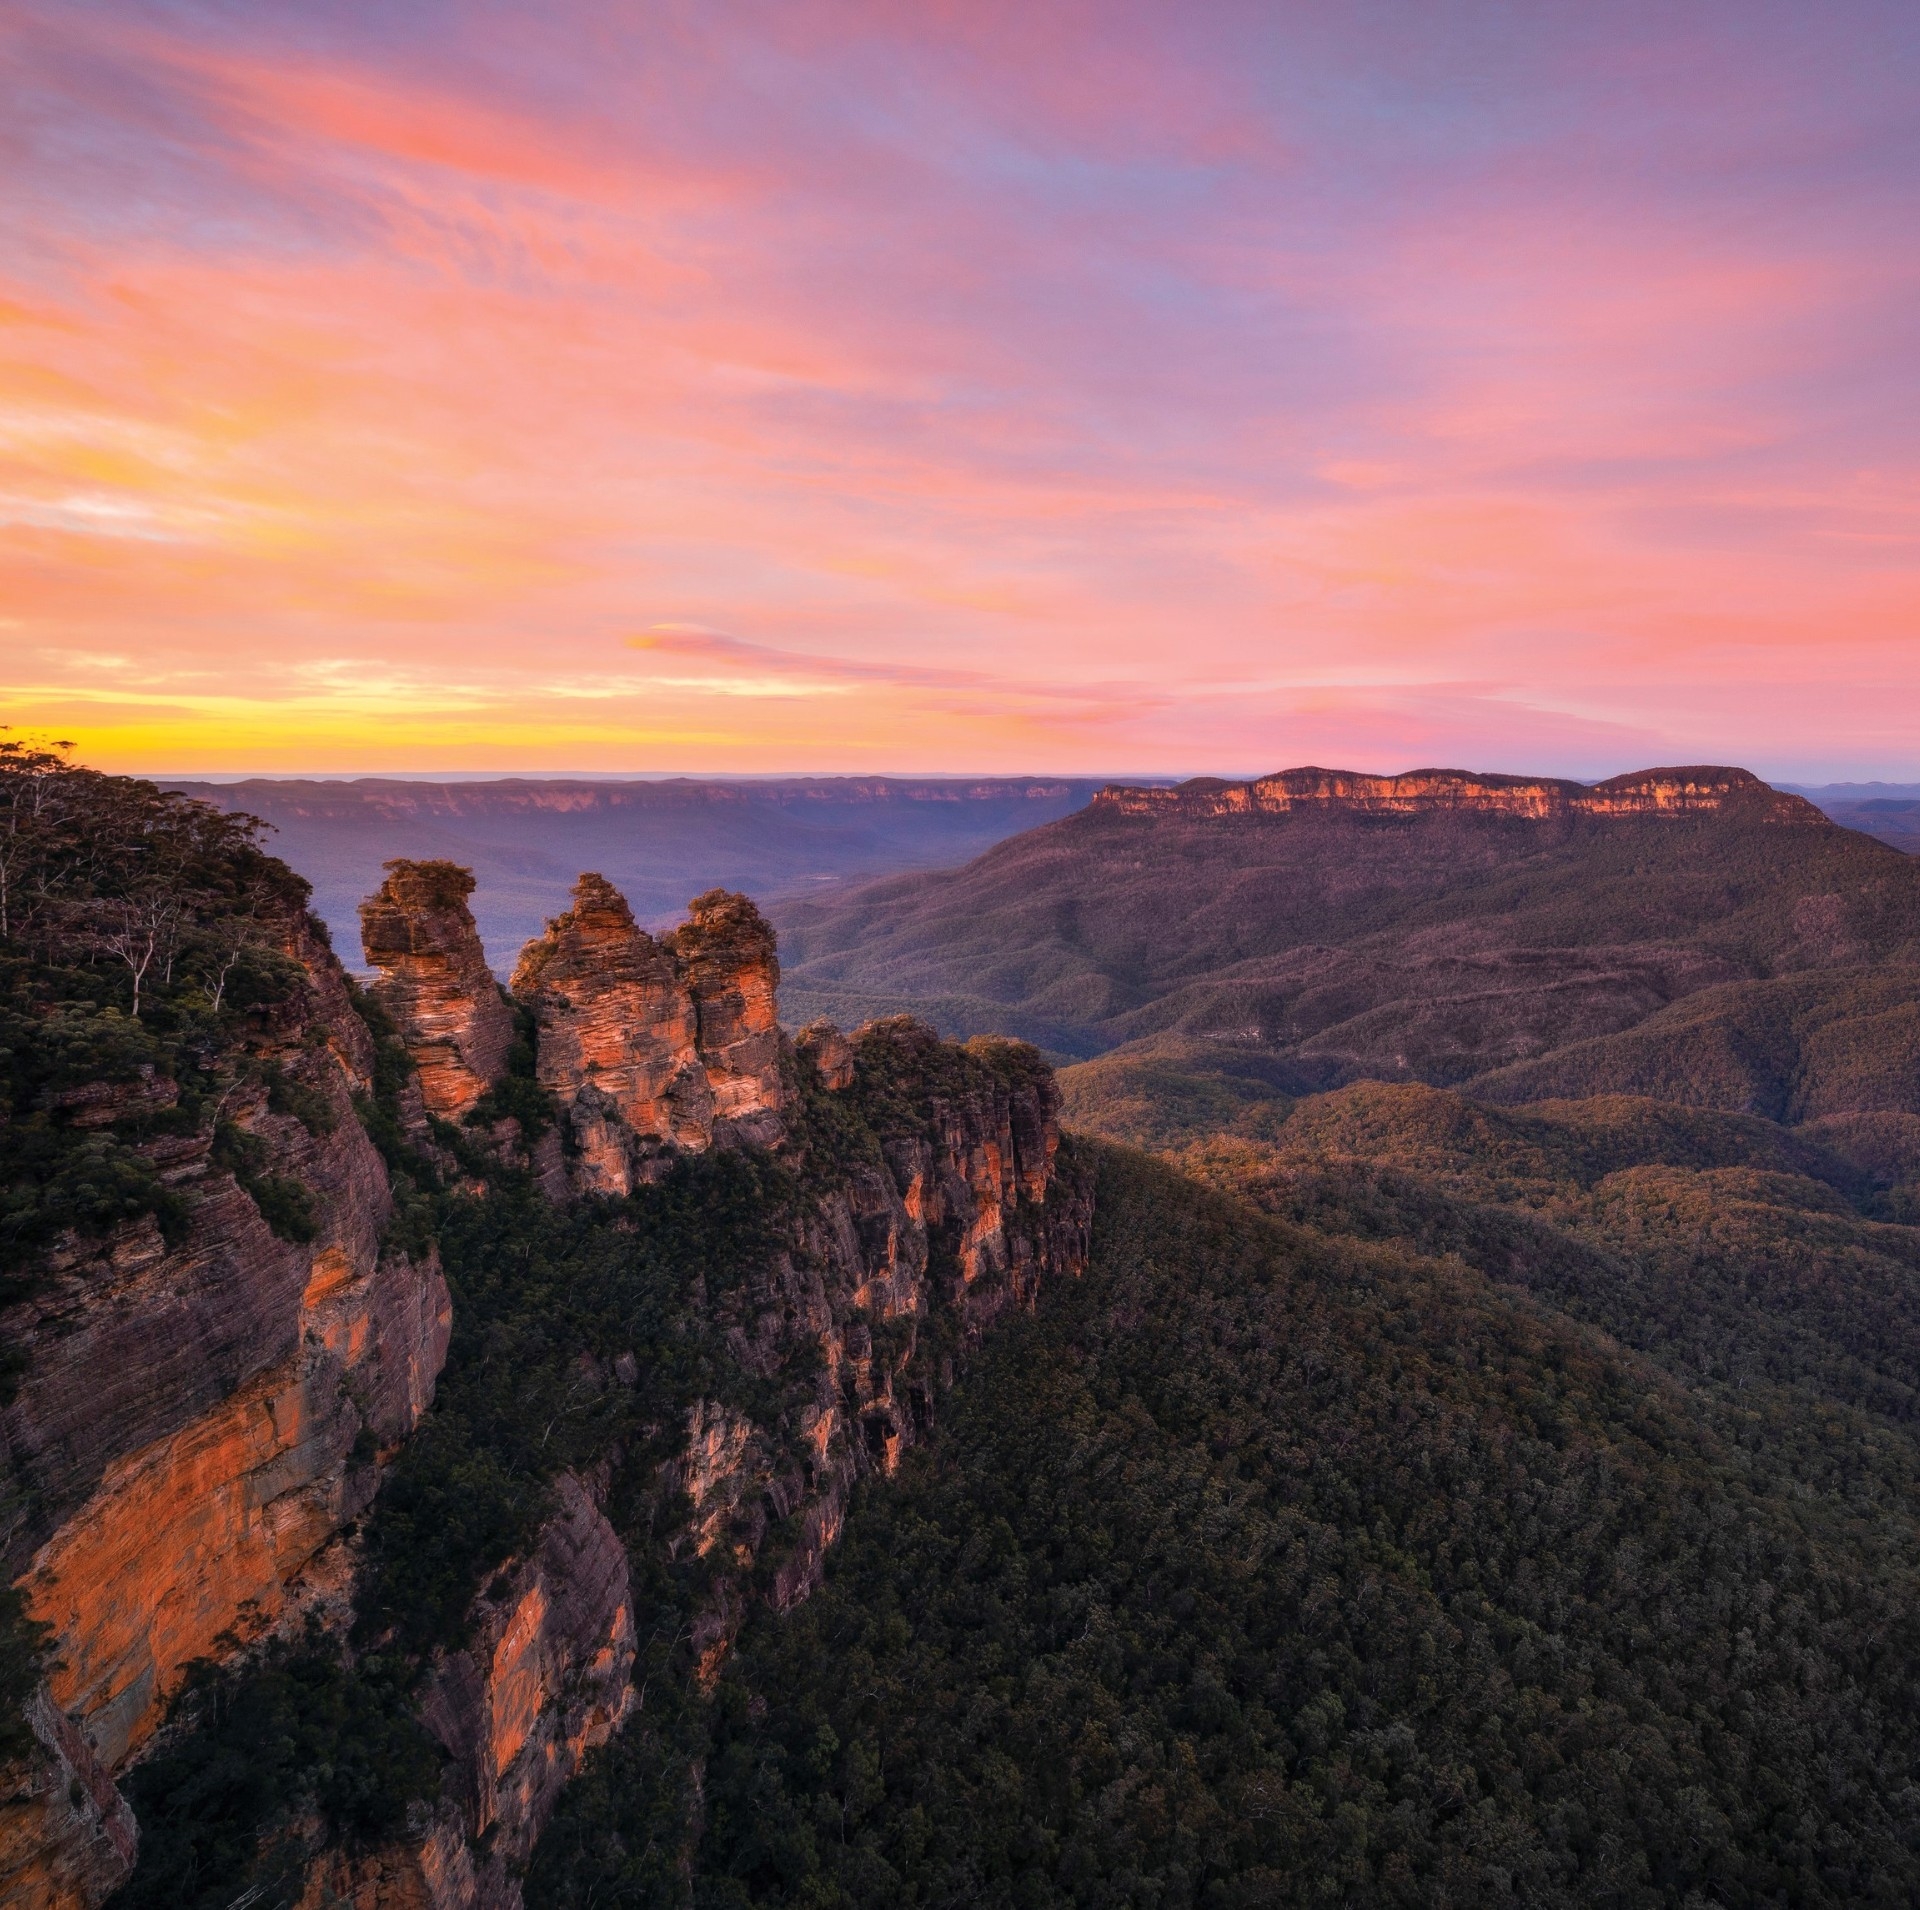 新南威尔士州，风景秀丽的蓝山国家公园中贾米逊谷和三姐妹峰的日出美景 © 新南威尔士州旅游局版权所有